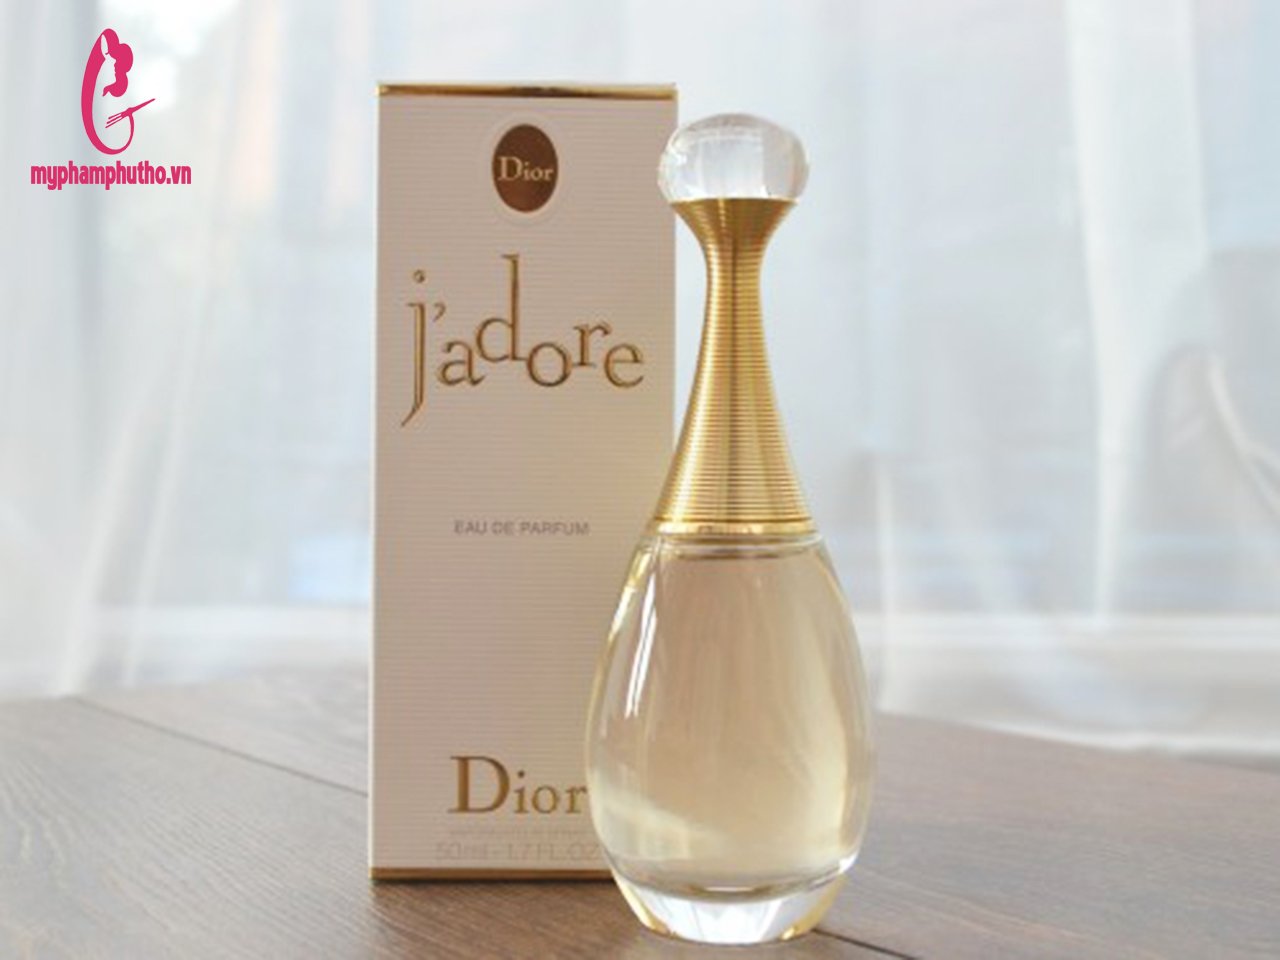 Dior  Nước hoa nữ Jadore EDP mini 5mL  Din House